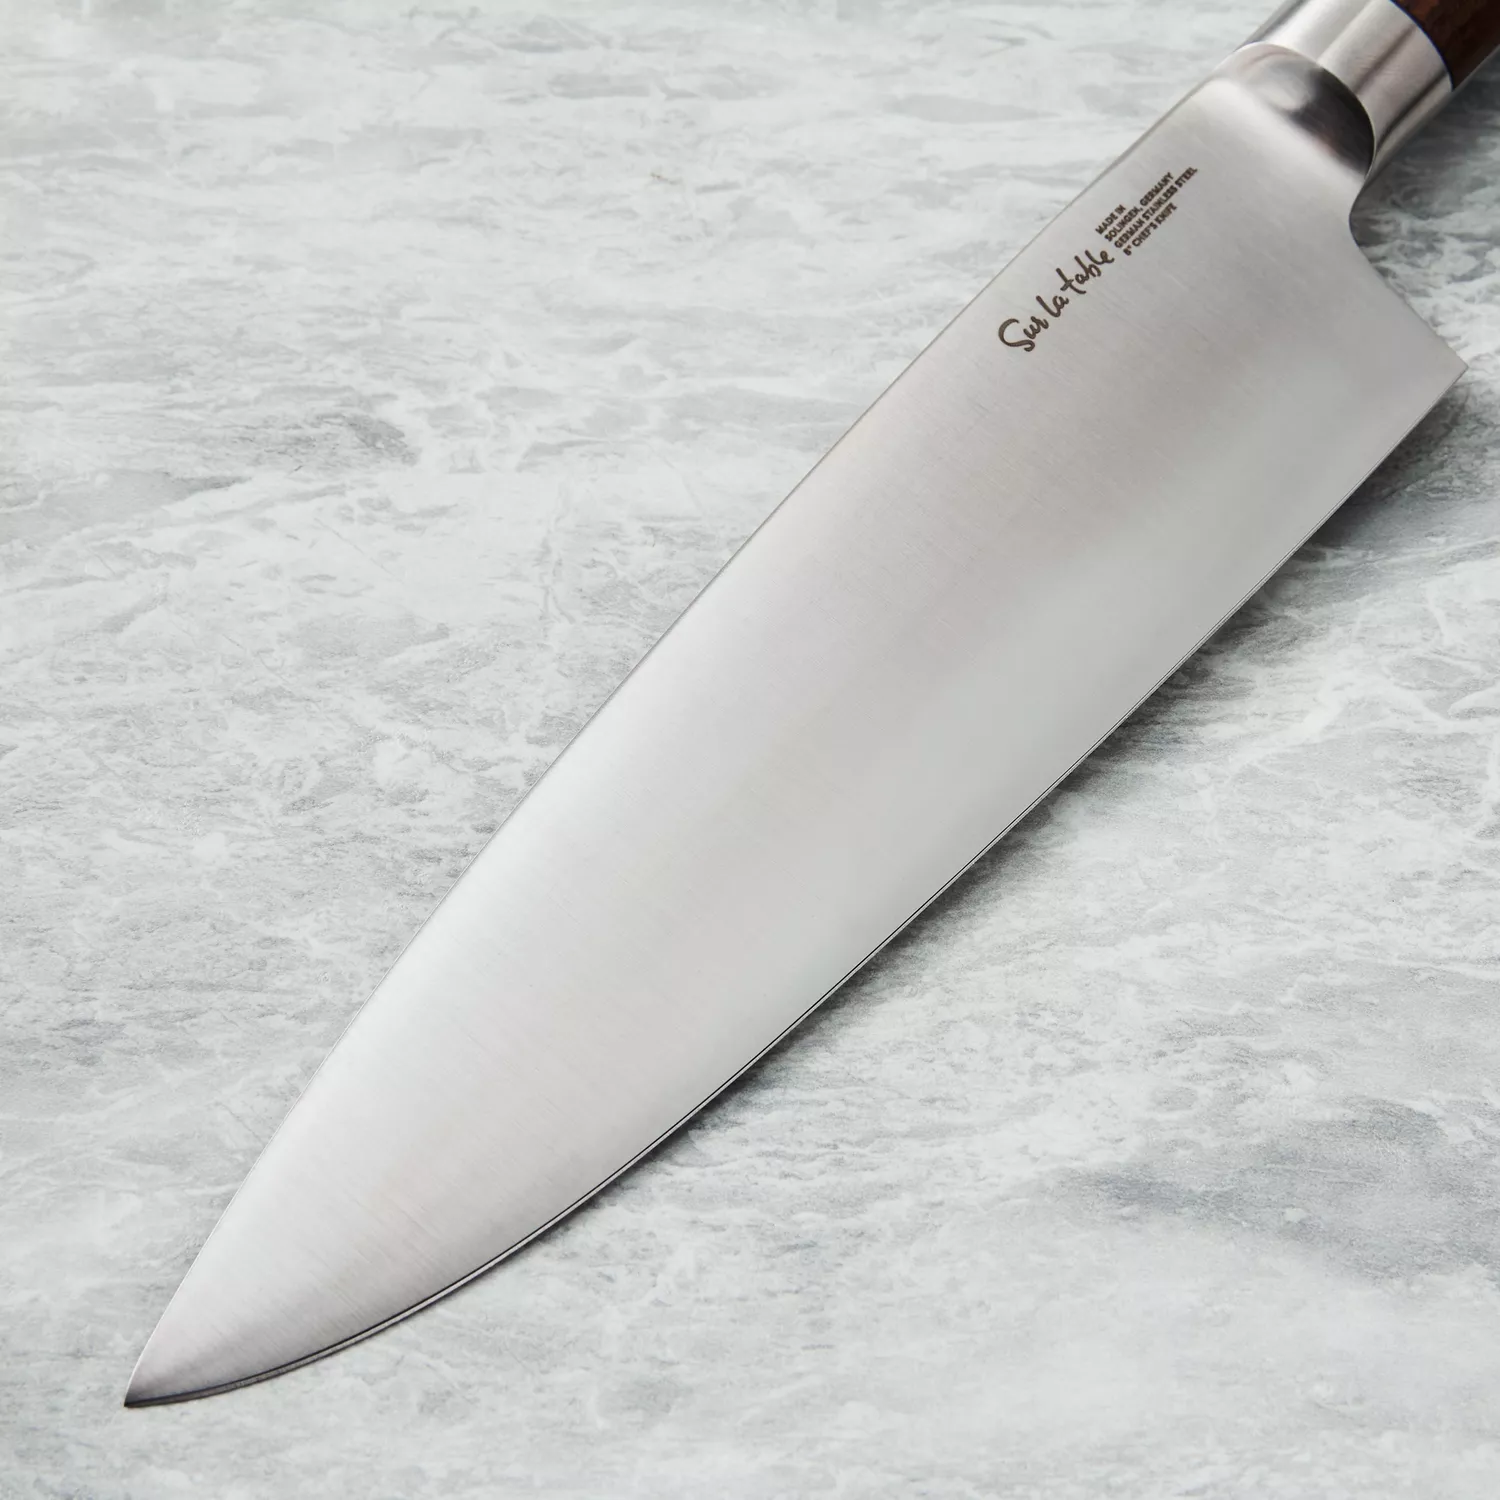 Sur La Table Classic 8 Chef's & Paring Knife Set